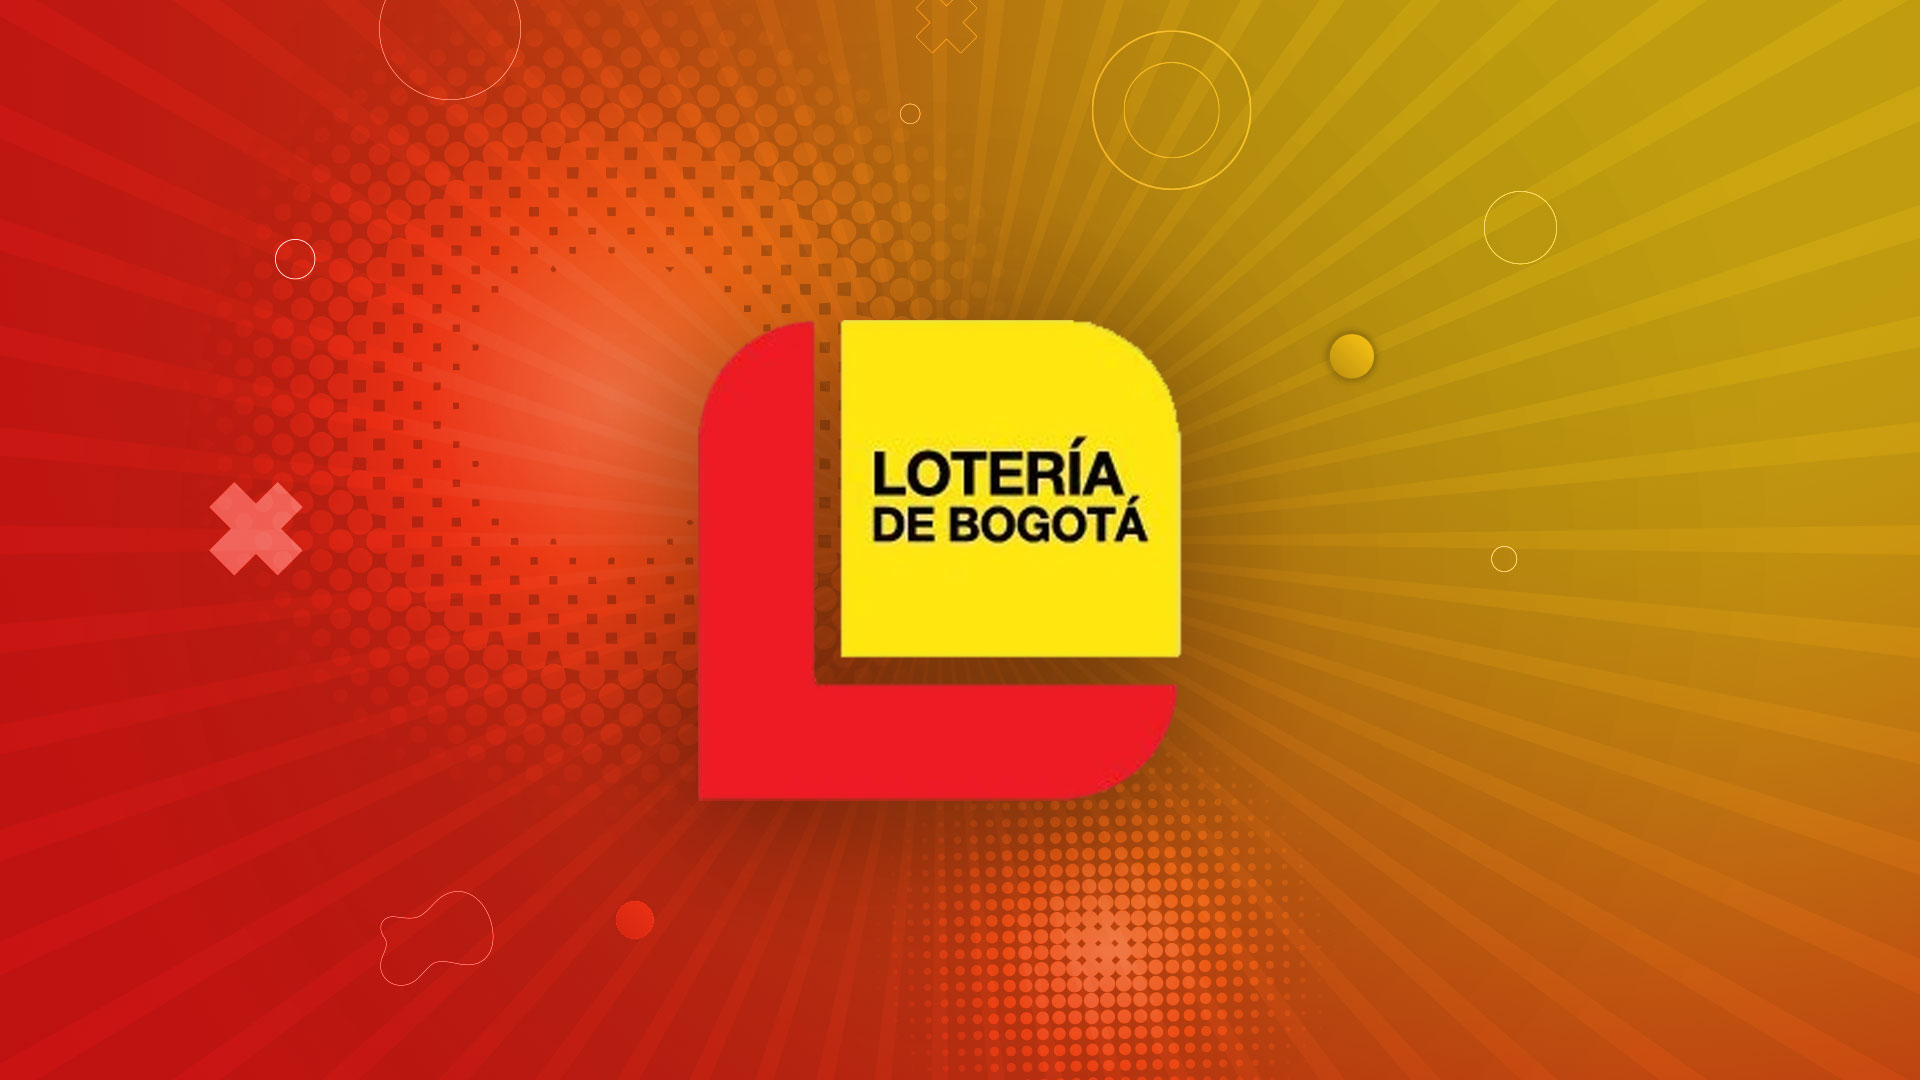 Jugada ganadora y resultado del último sorteo de Lotería de Bogotá